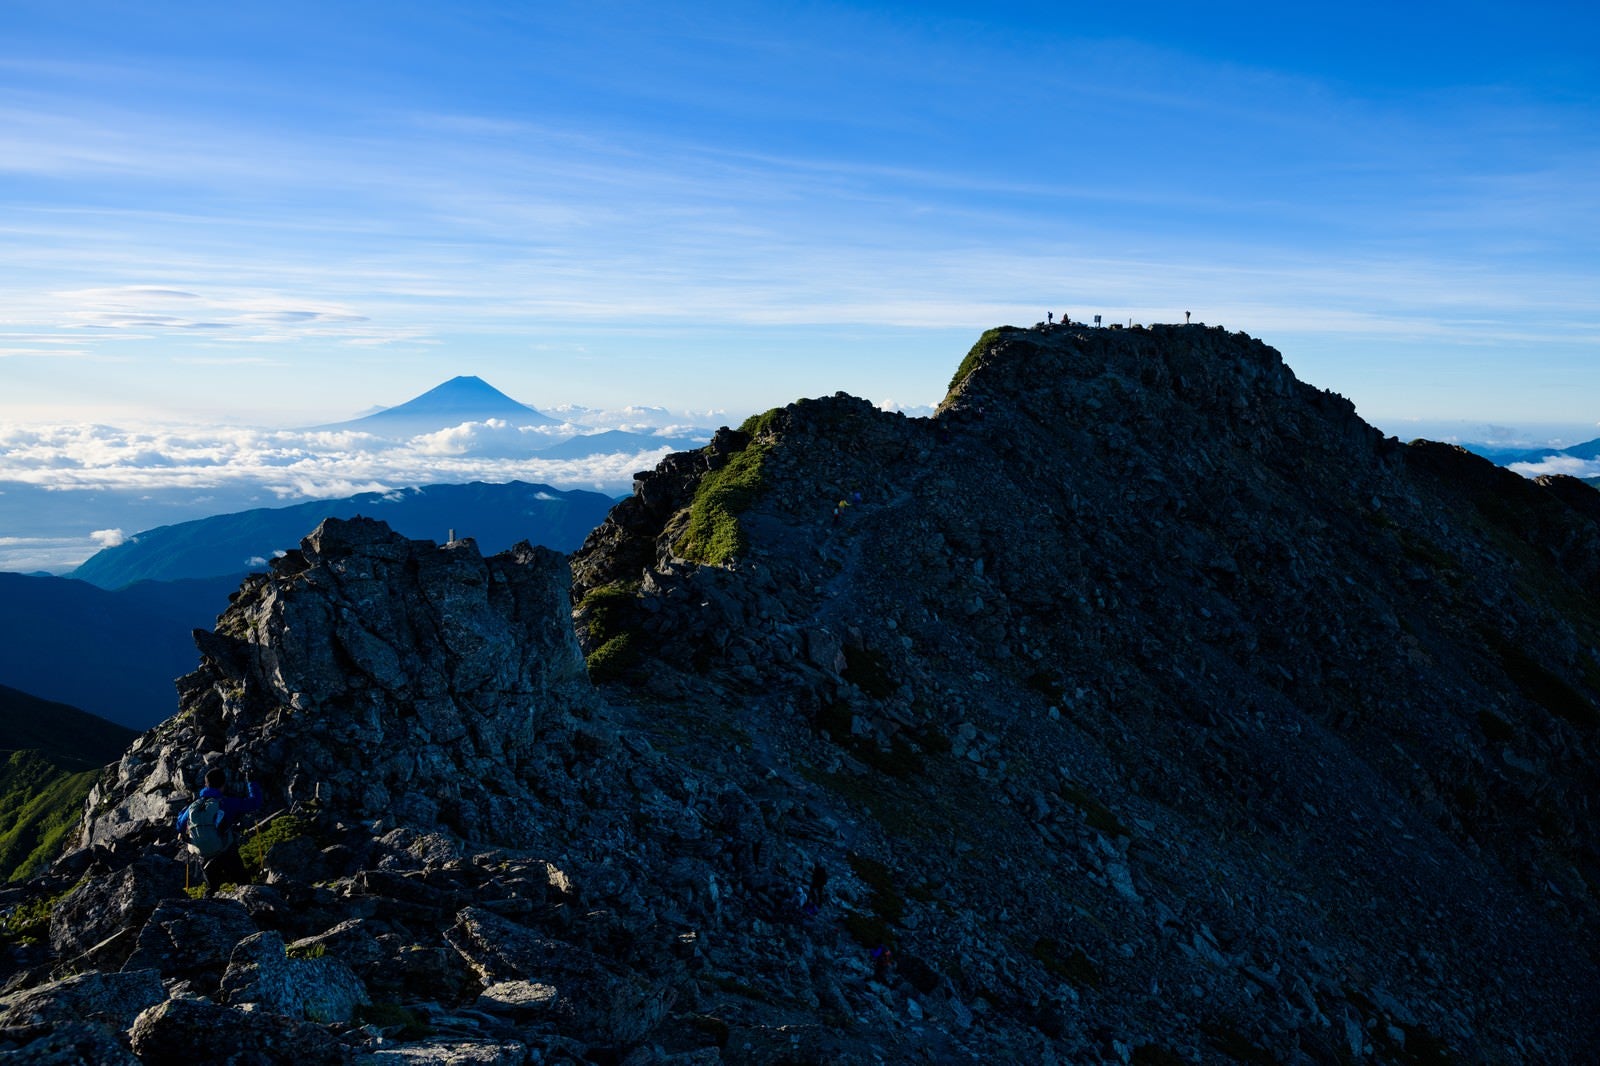 「日本最高峰の富士山と二位の北岳の景観」の写真